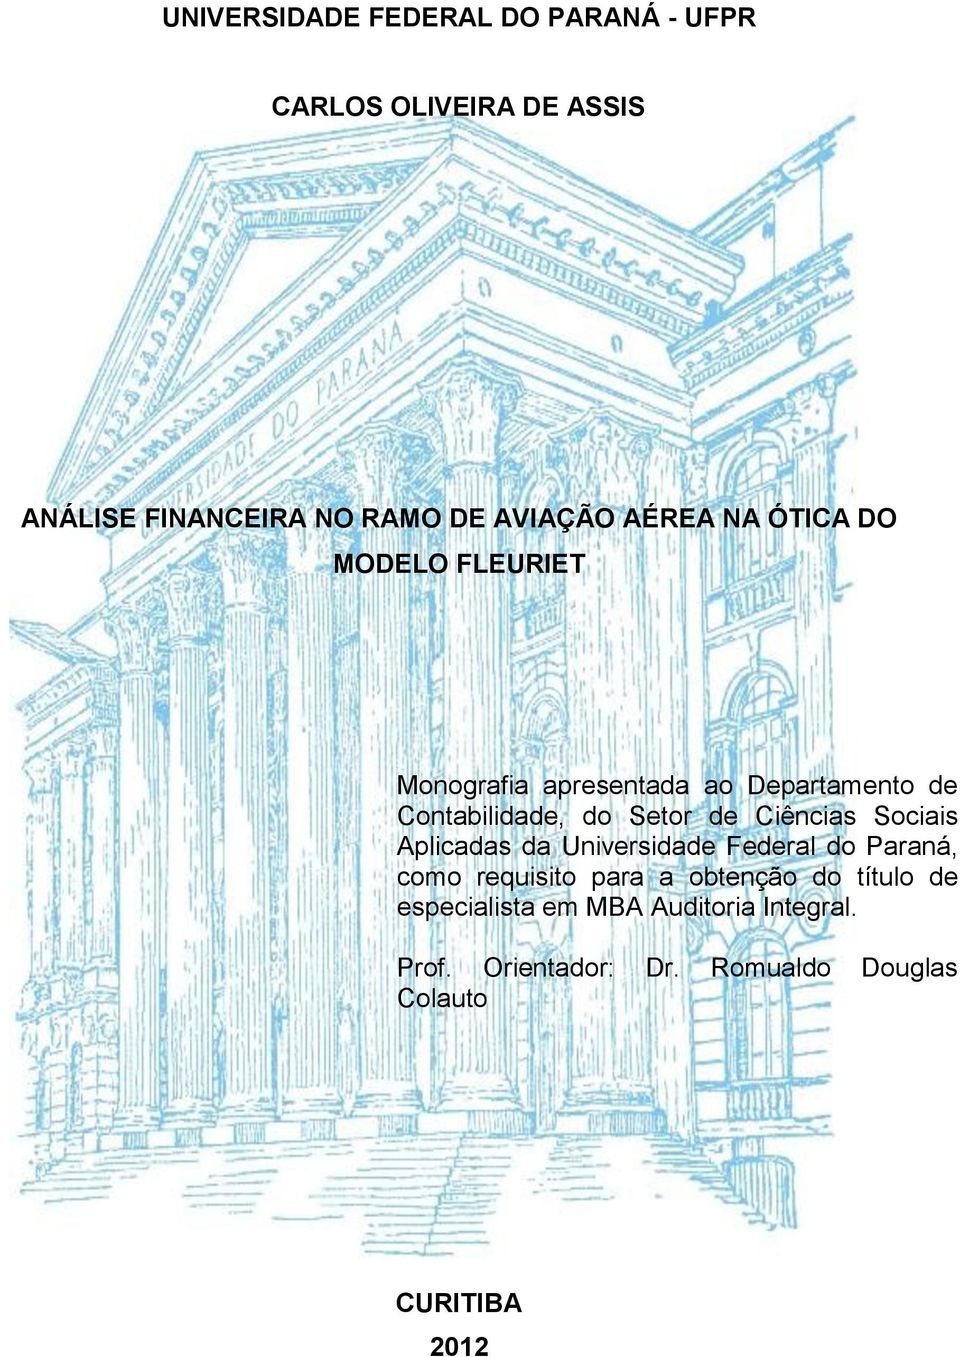 Ciências Sociais Aplicadas da Universidade Federal do Paraná, como requisito para a obtenção do título